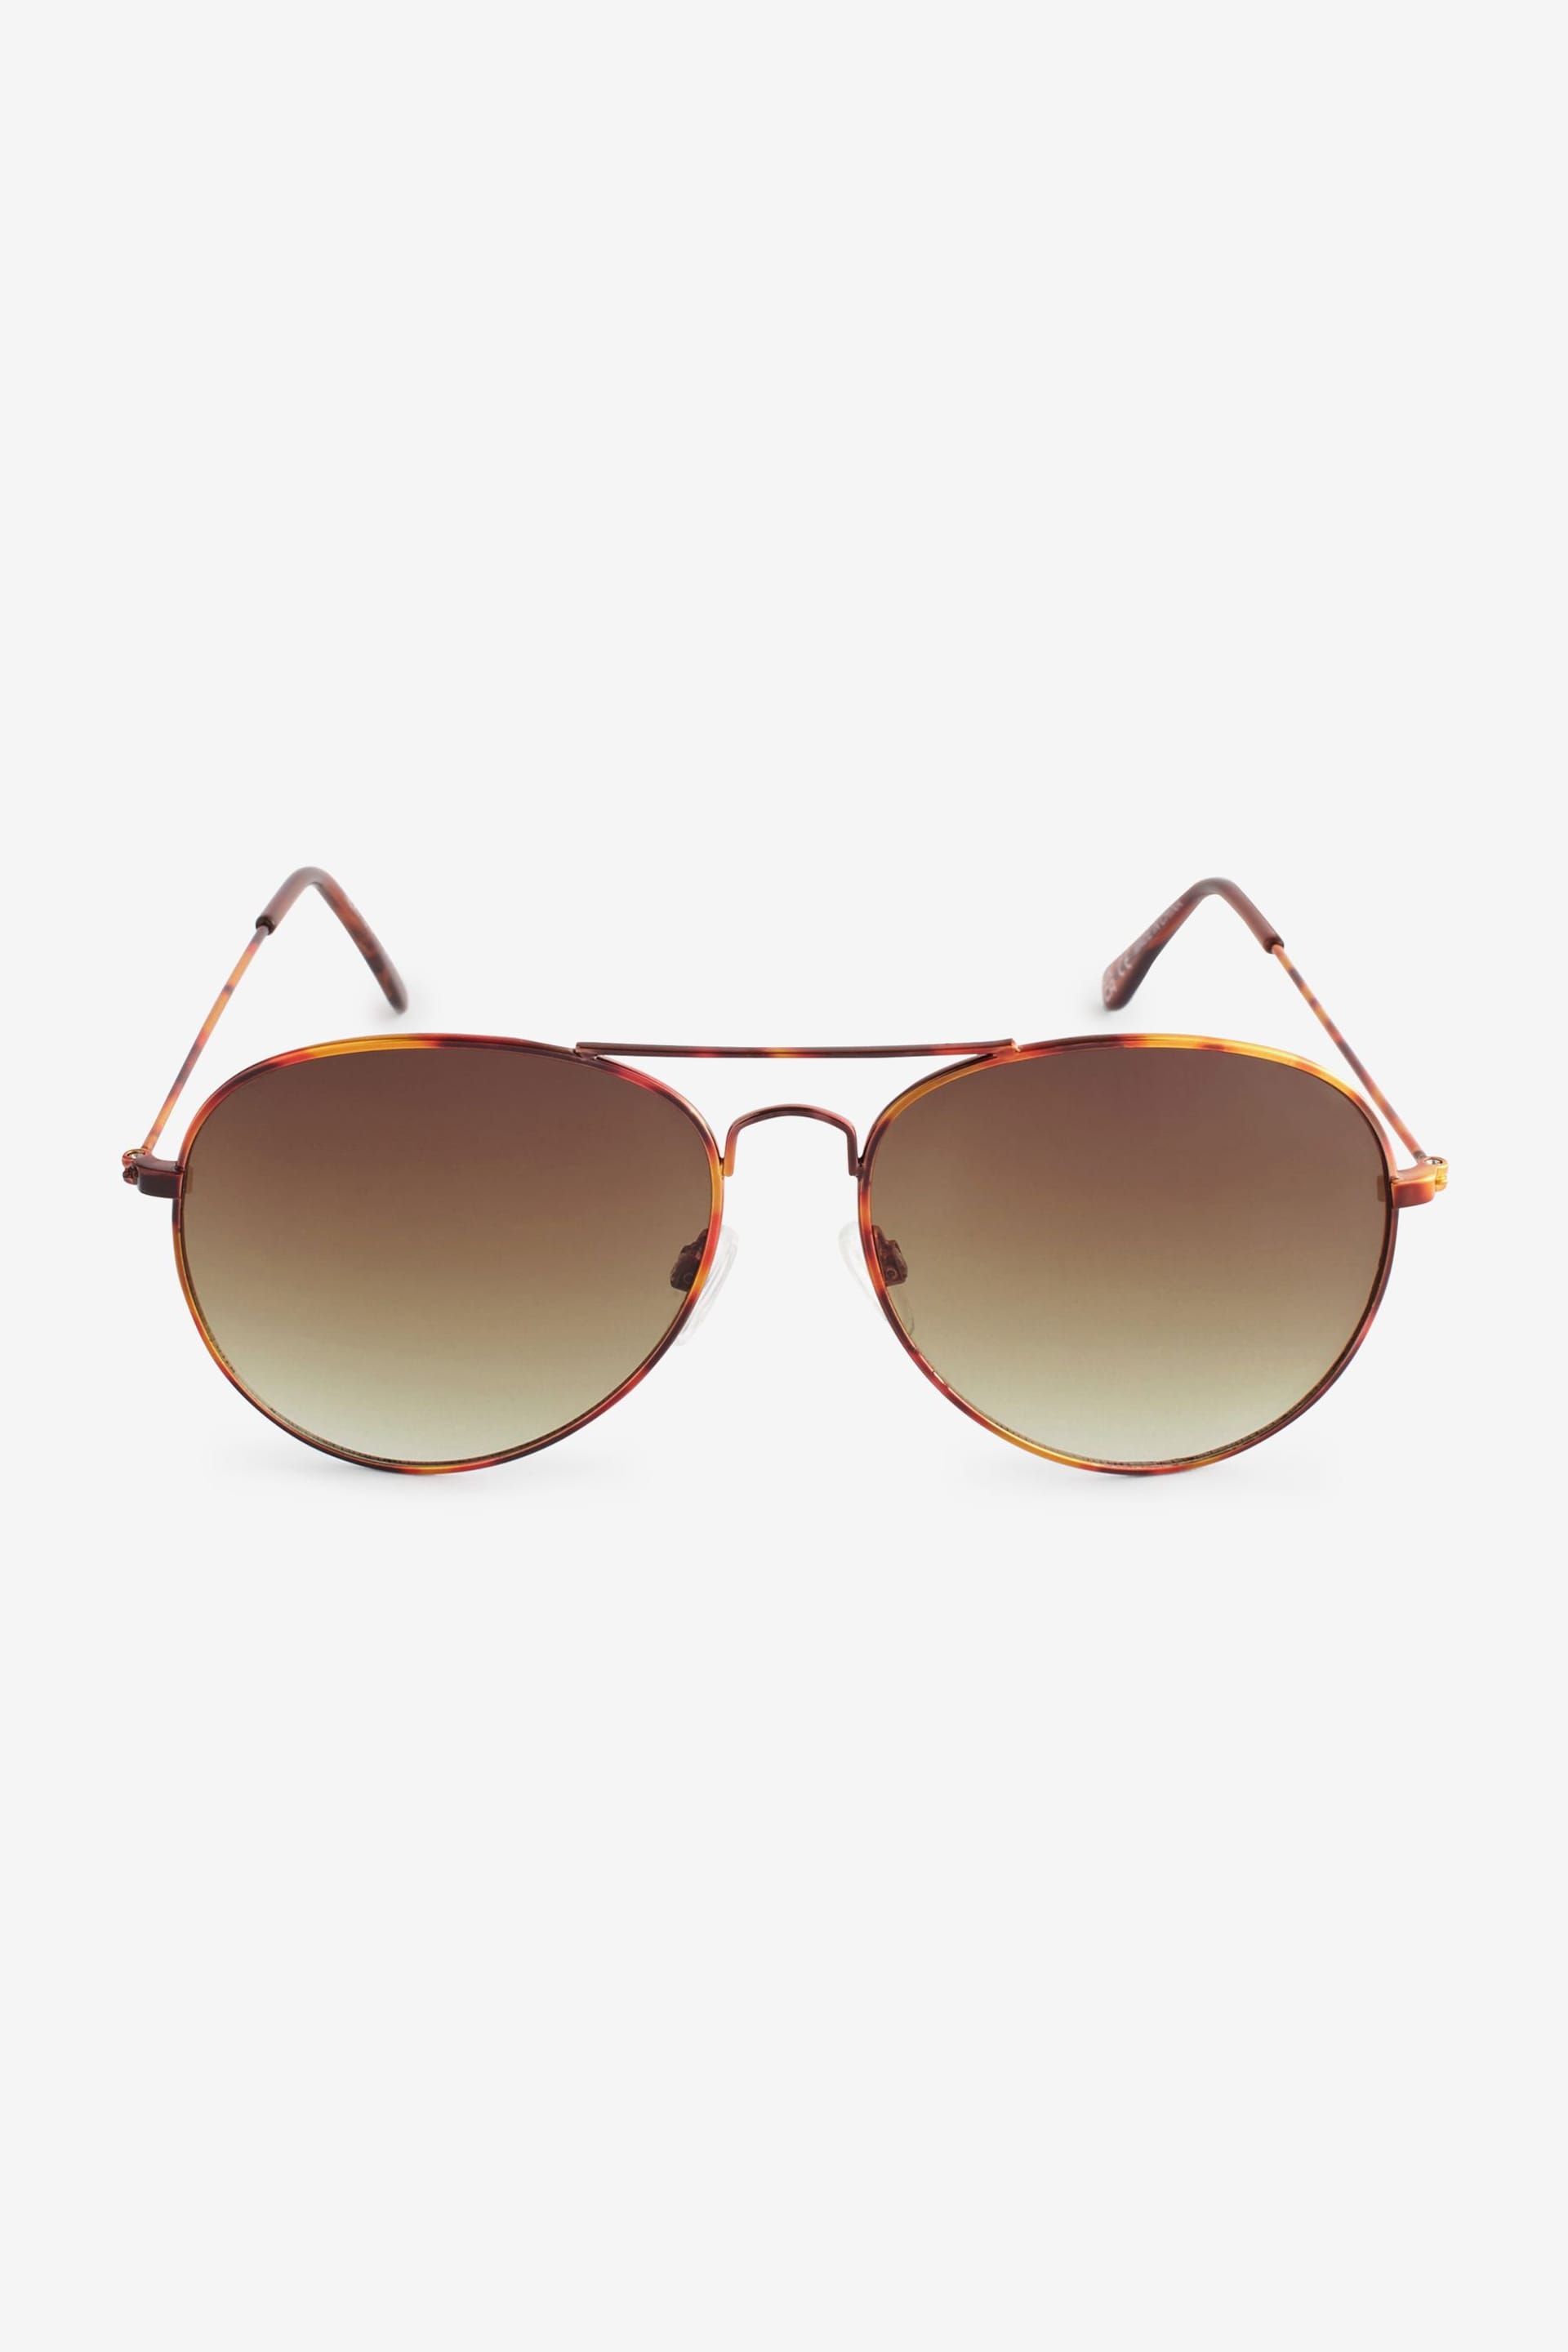 Tortoiseshell Brown Classic Aviator Style Sunglasses - Image 4 of 6